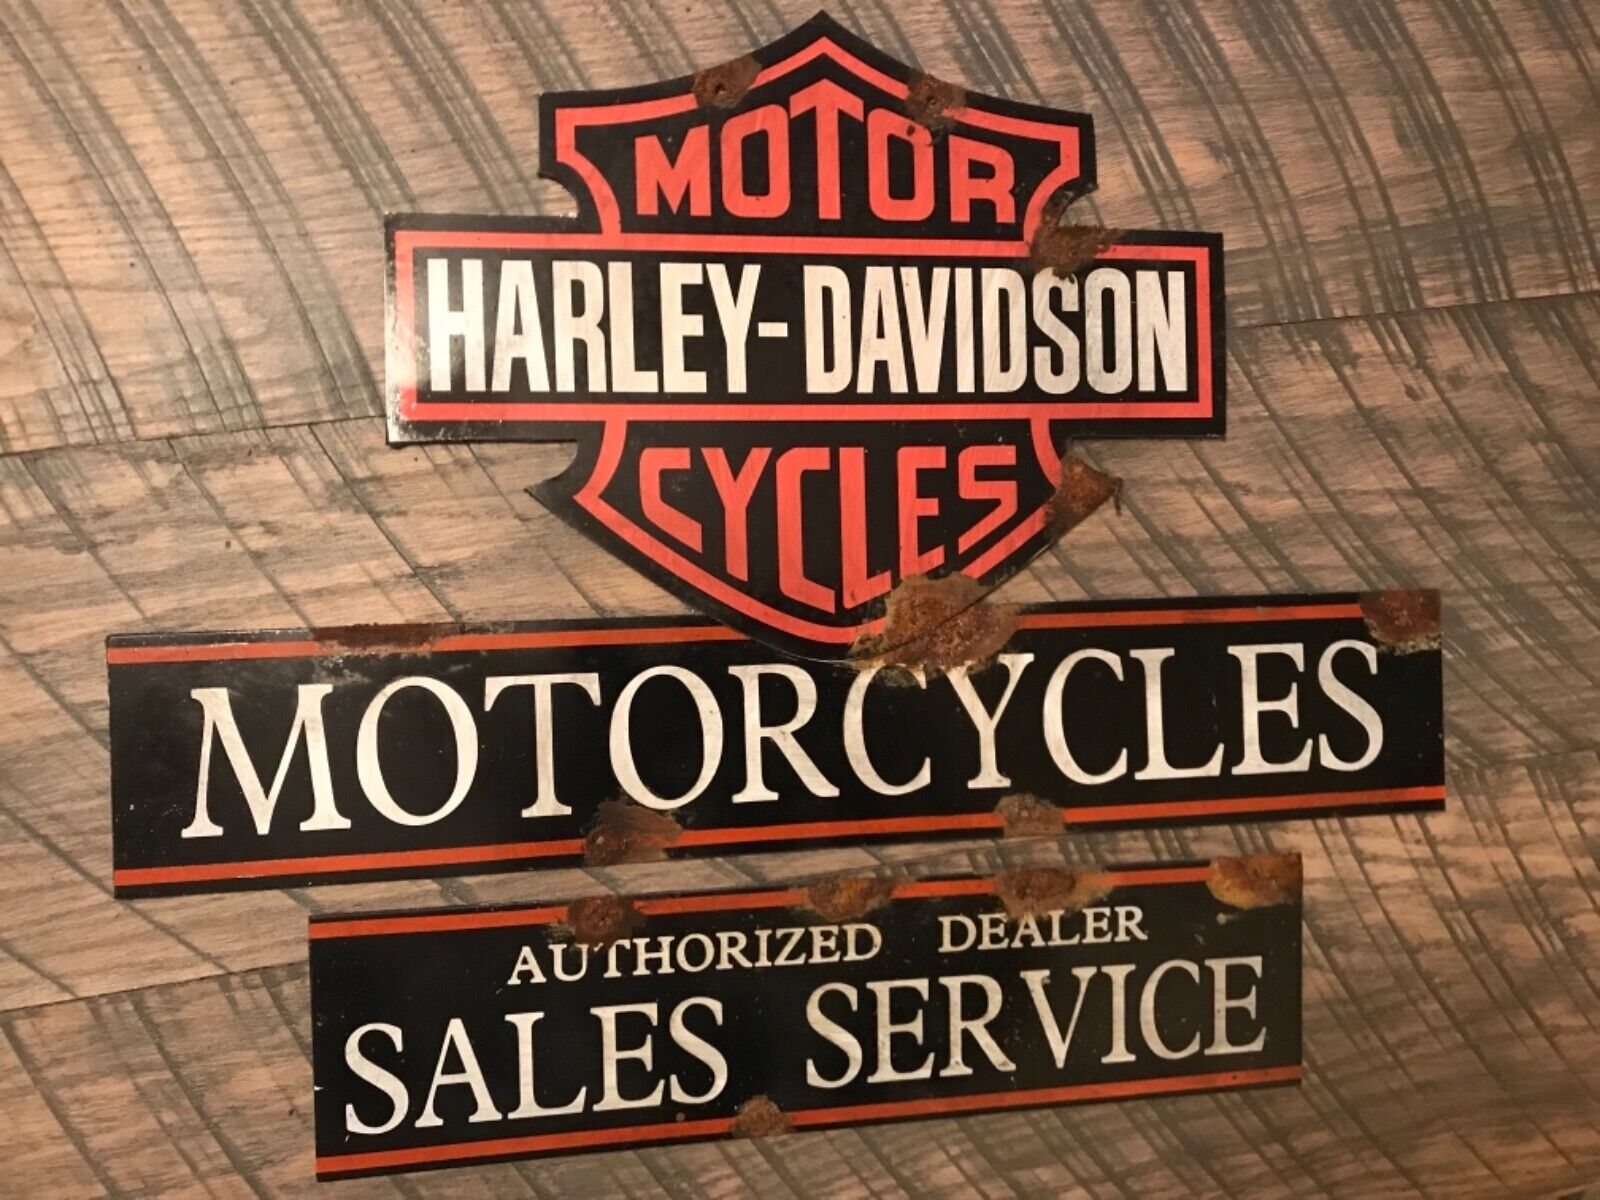 antique barn find look Harley Davidson motorcycle dealer sales service sign NICE